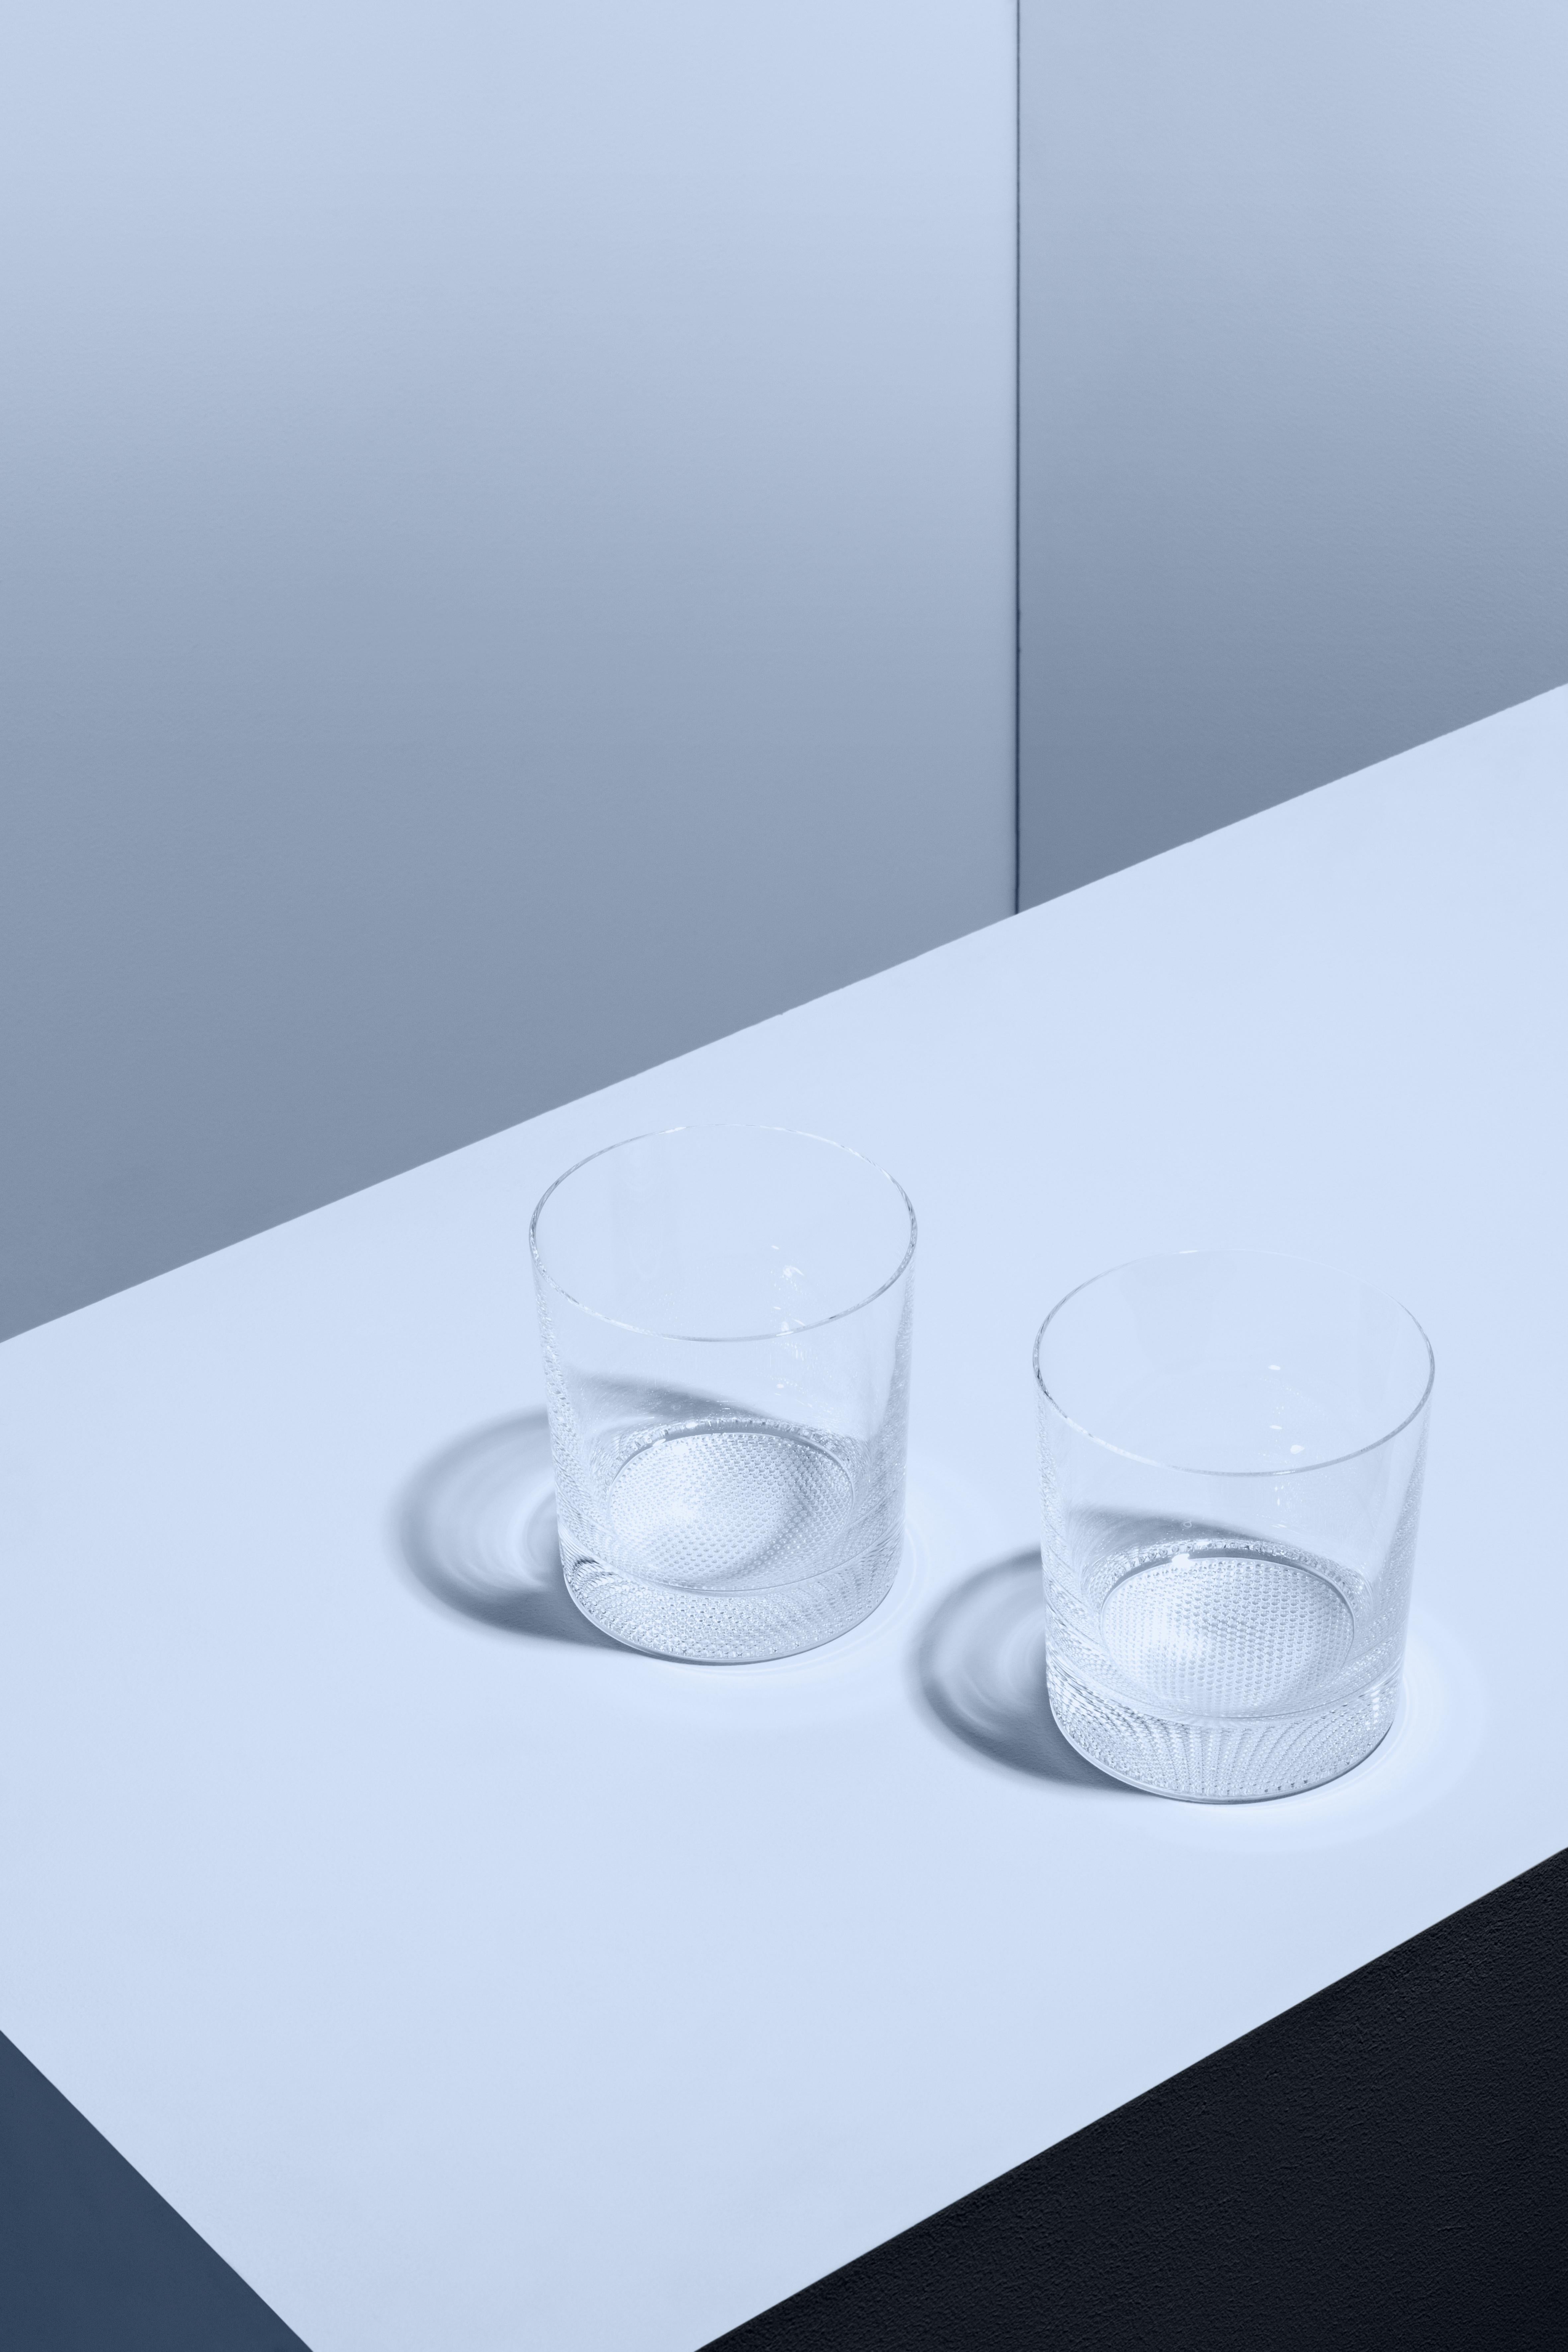 Comme tous les articles de la collection Limelight, ce verre Double Old Fashioned possède une base texturée distinctive qui reflète optiquement la lumière. Le DOF est idéal pour les cocktails réfrigérés, avec ou sans alcool, ou pour servir des